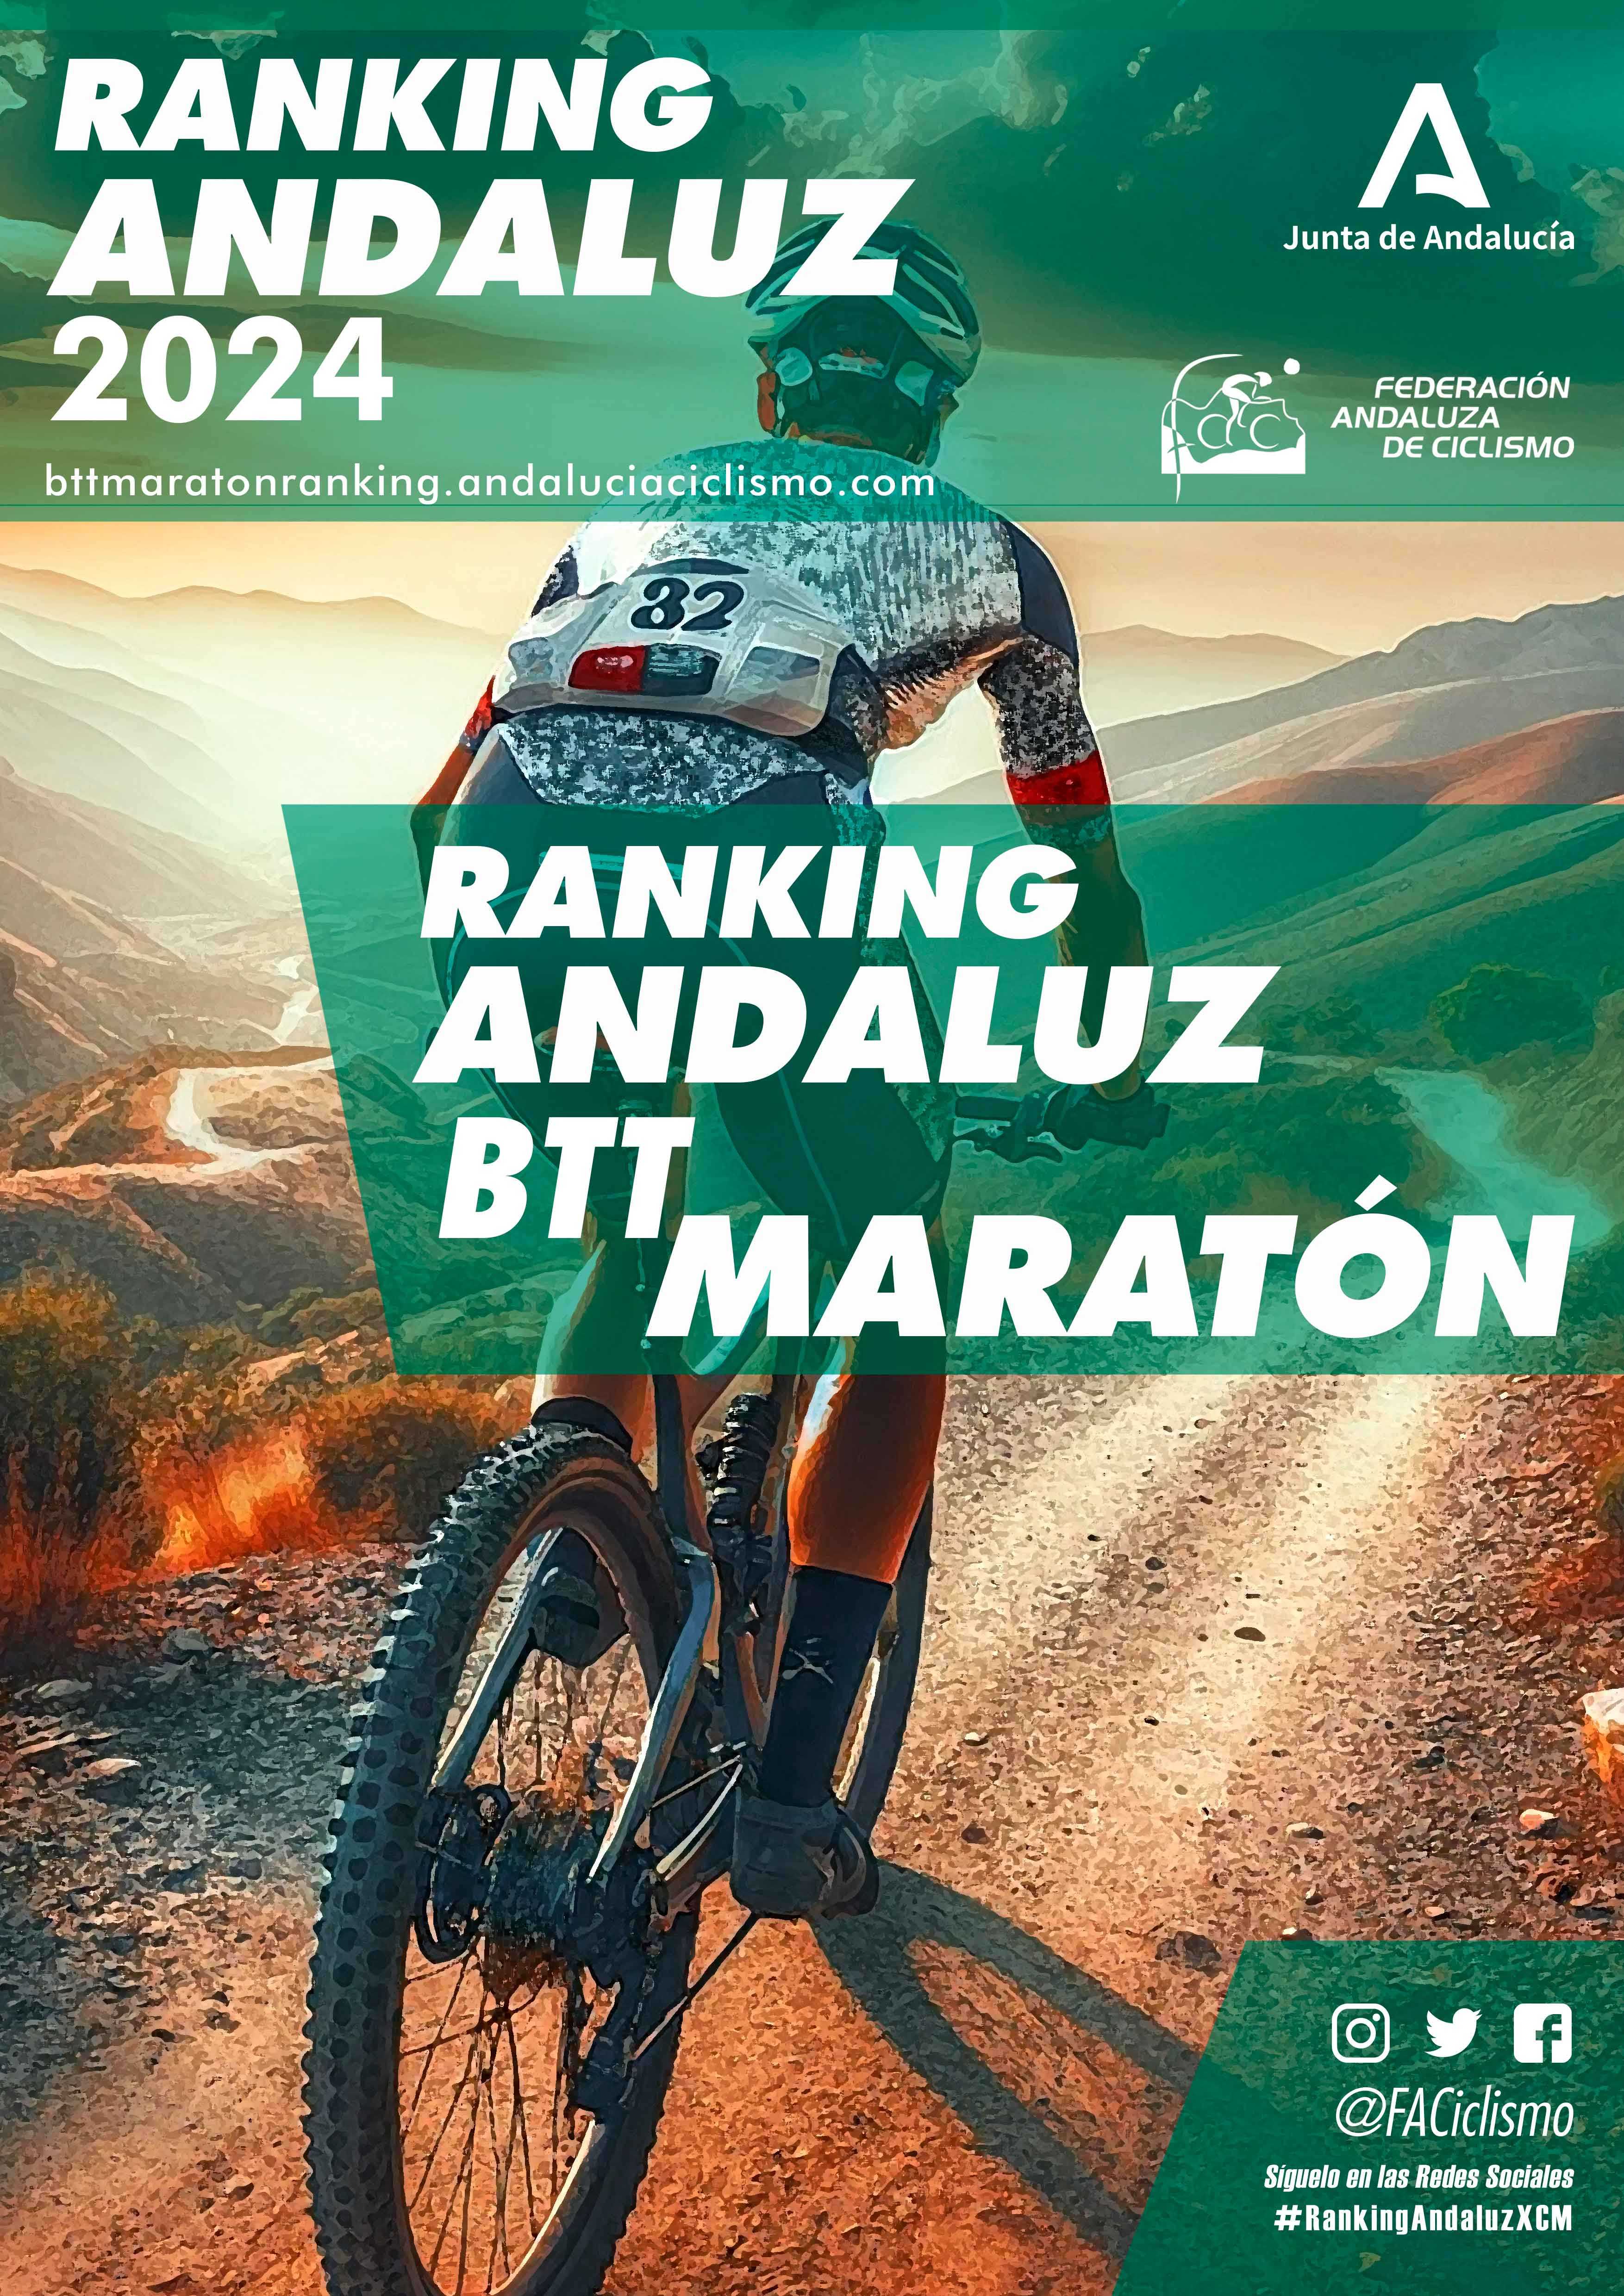 Las XCM Series Almería 2024 pedalearán ‘Sin miedo al Brujo’